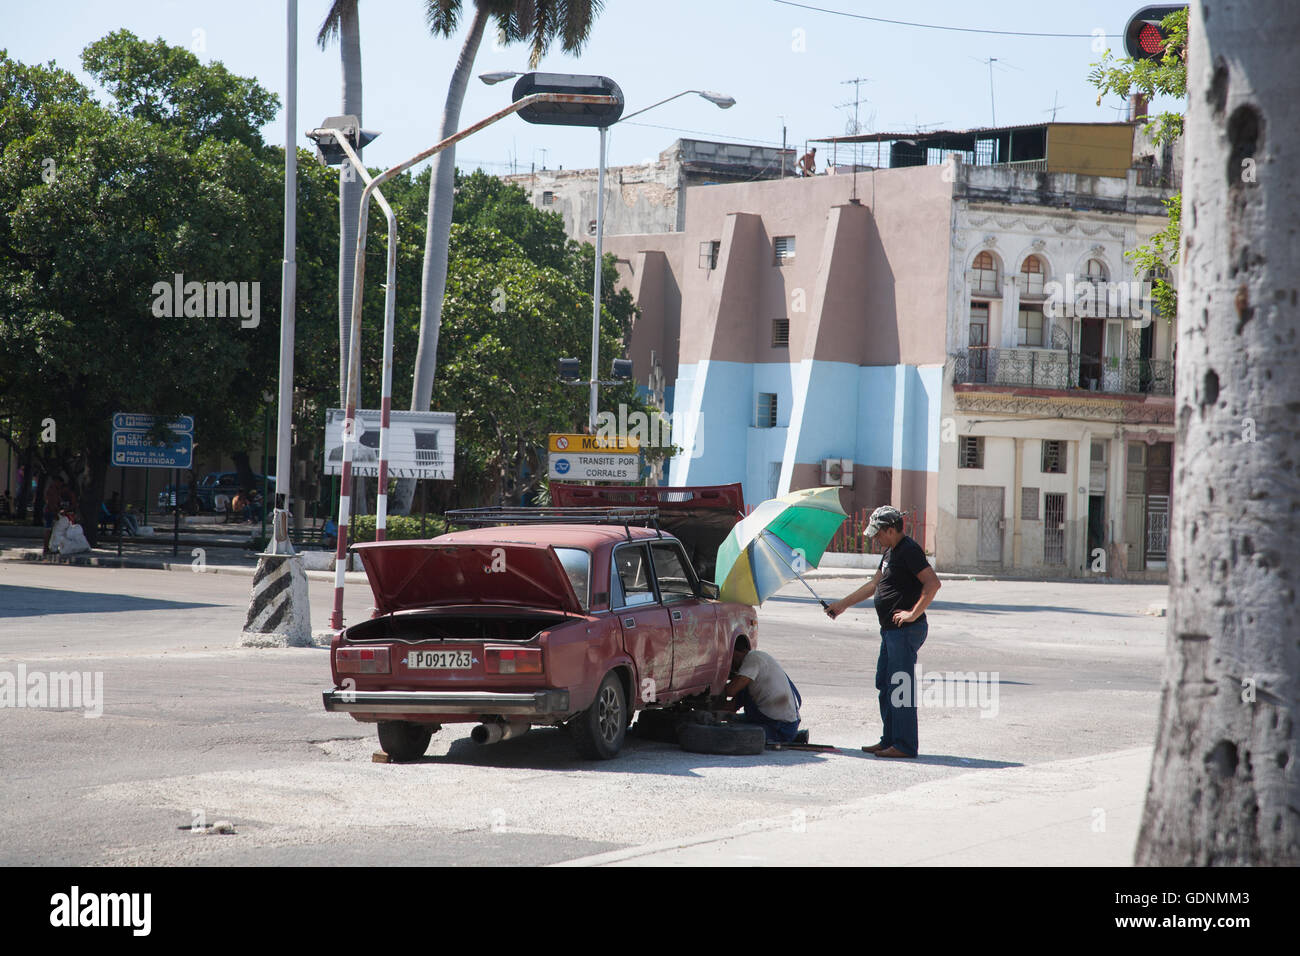 A broken-down Lada car is worked on my a mechanic a street in Havana, Cuba Stock Photo